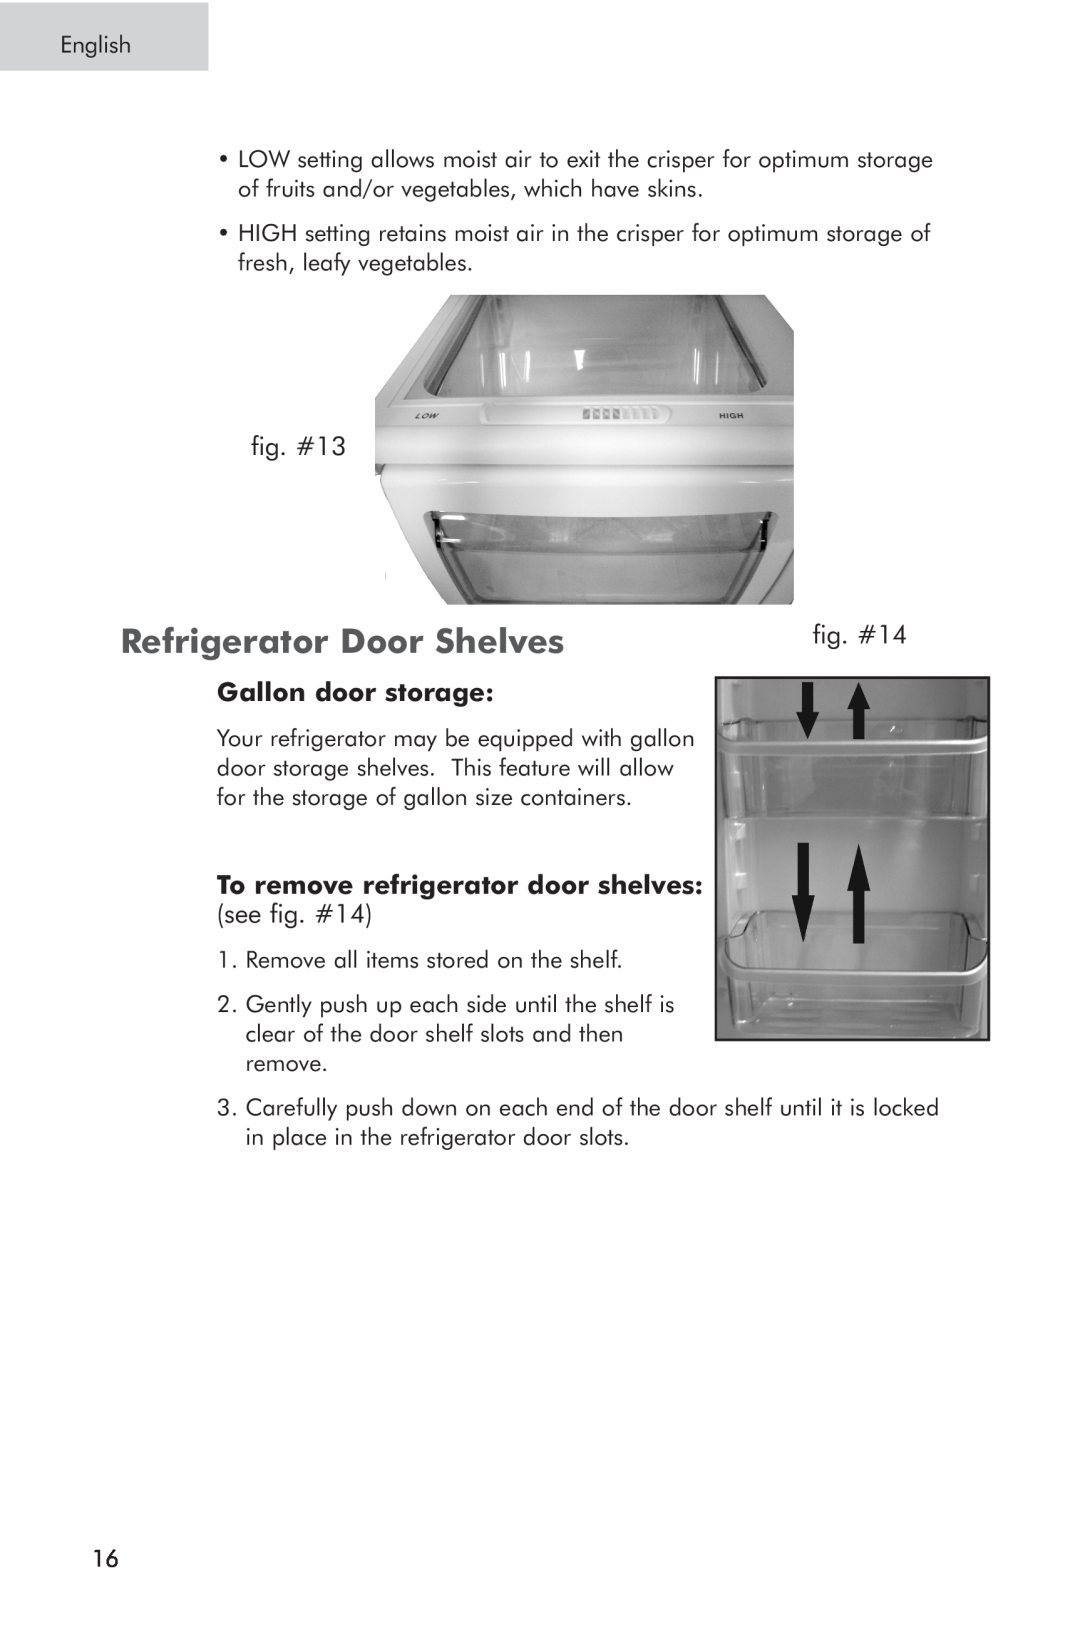 Haier RRTG, PRTS manual Refrigerator Door Shelves, Gallon door storage, To remove refrigerator door shelves 